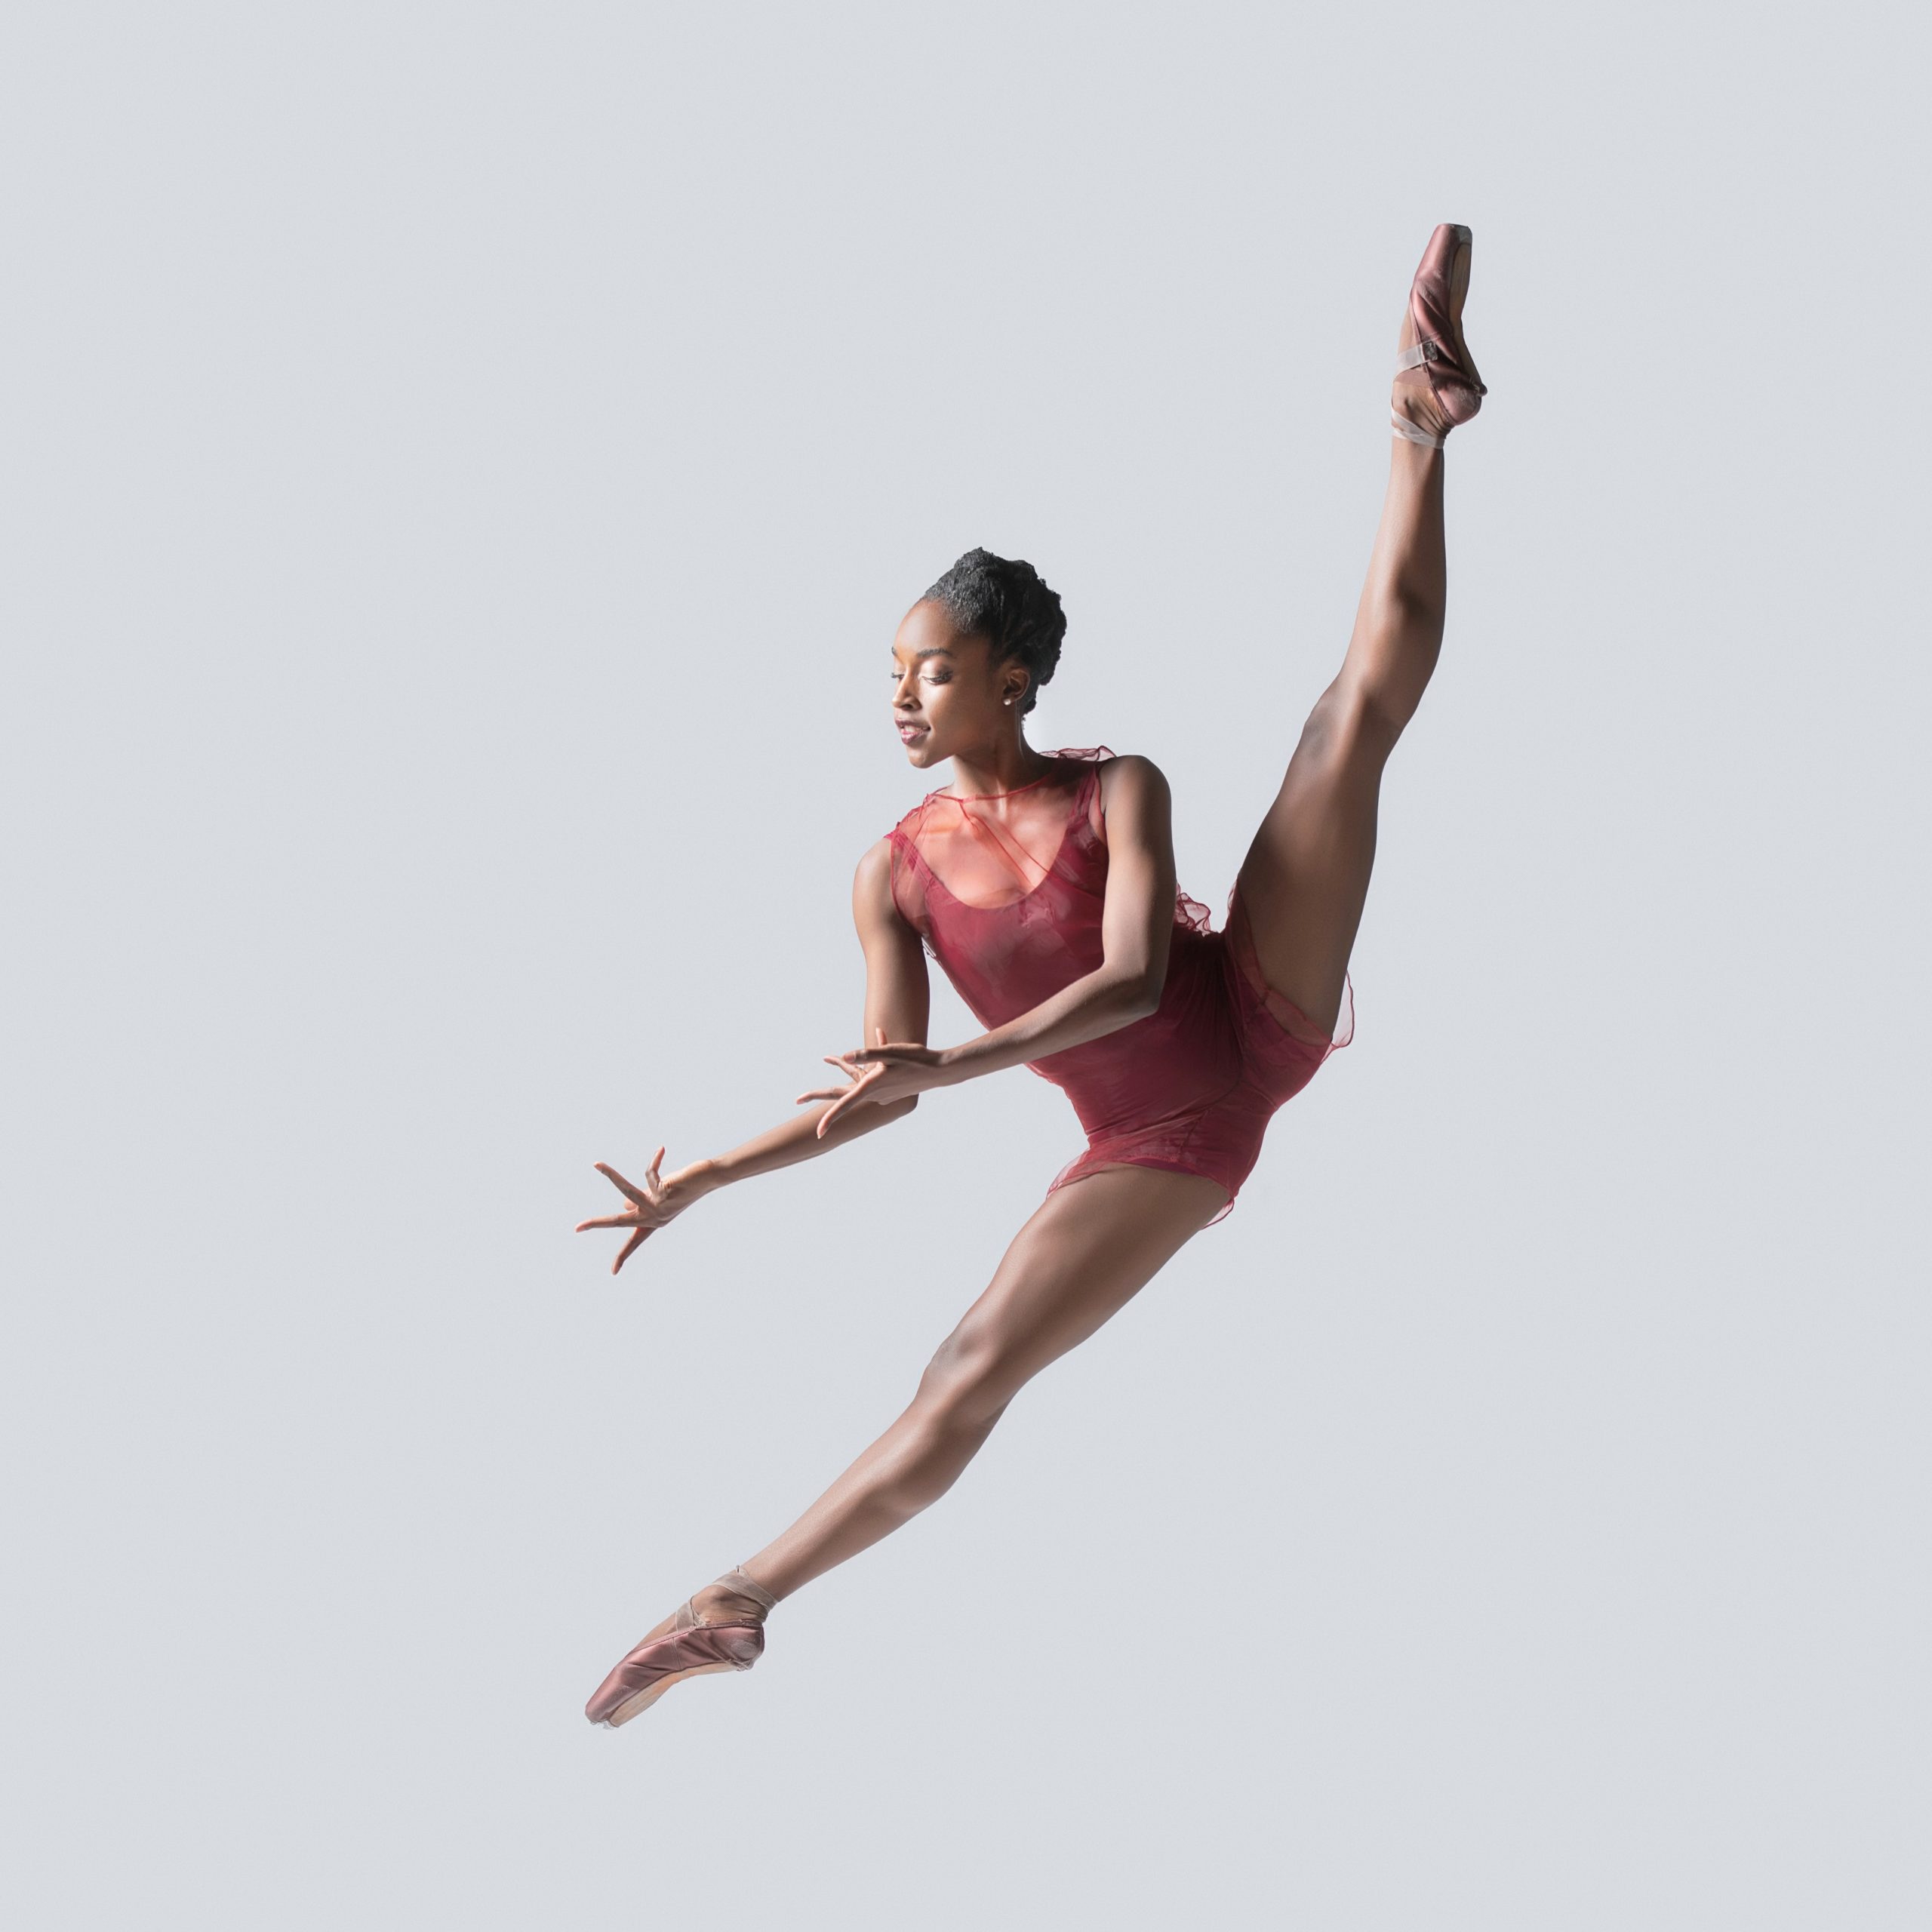 dancer in pink leotard performing tilt jump